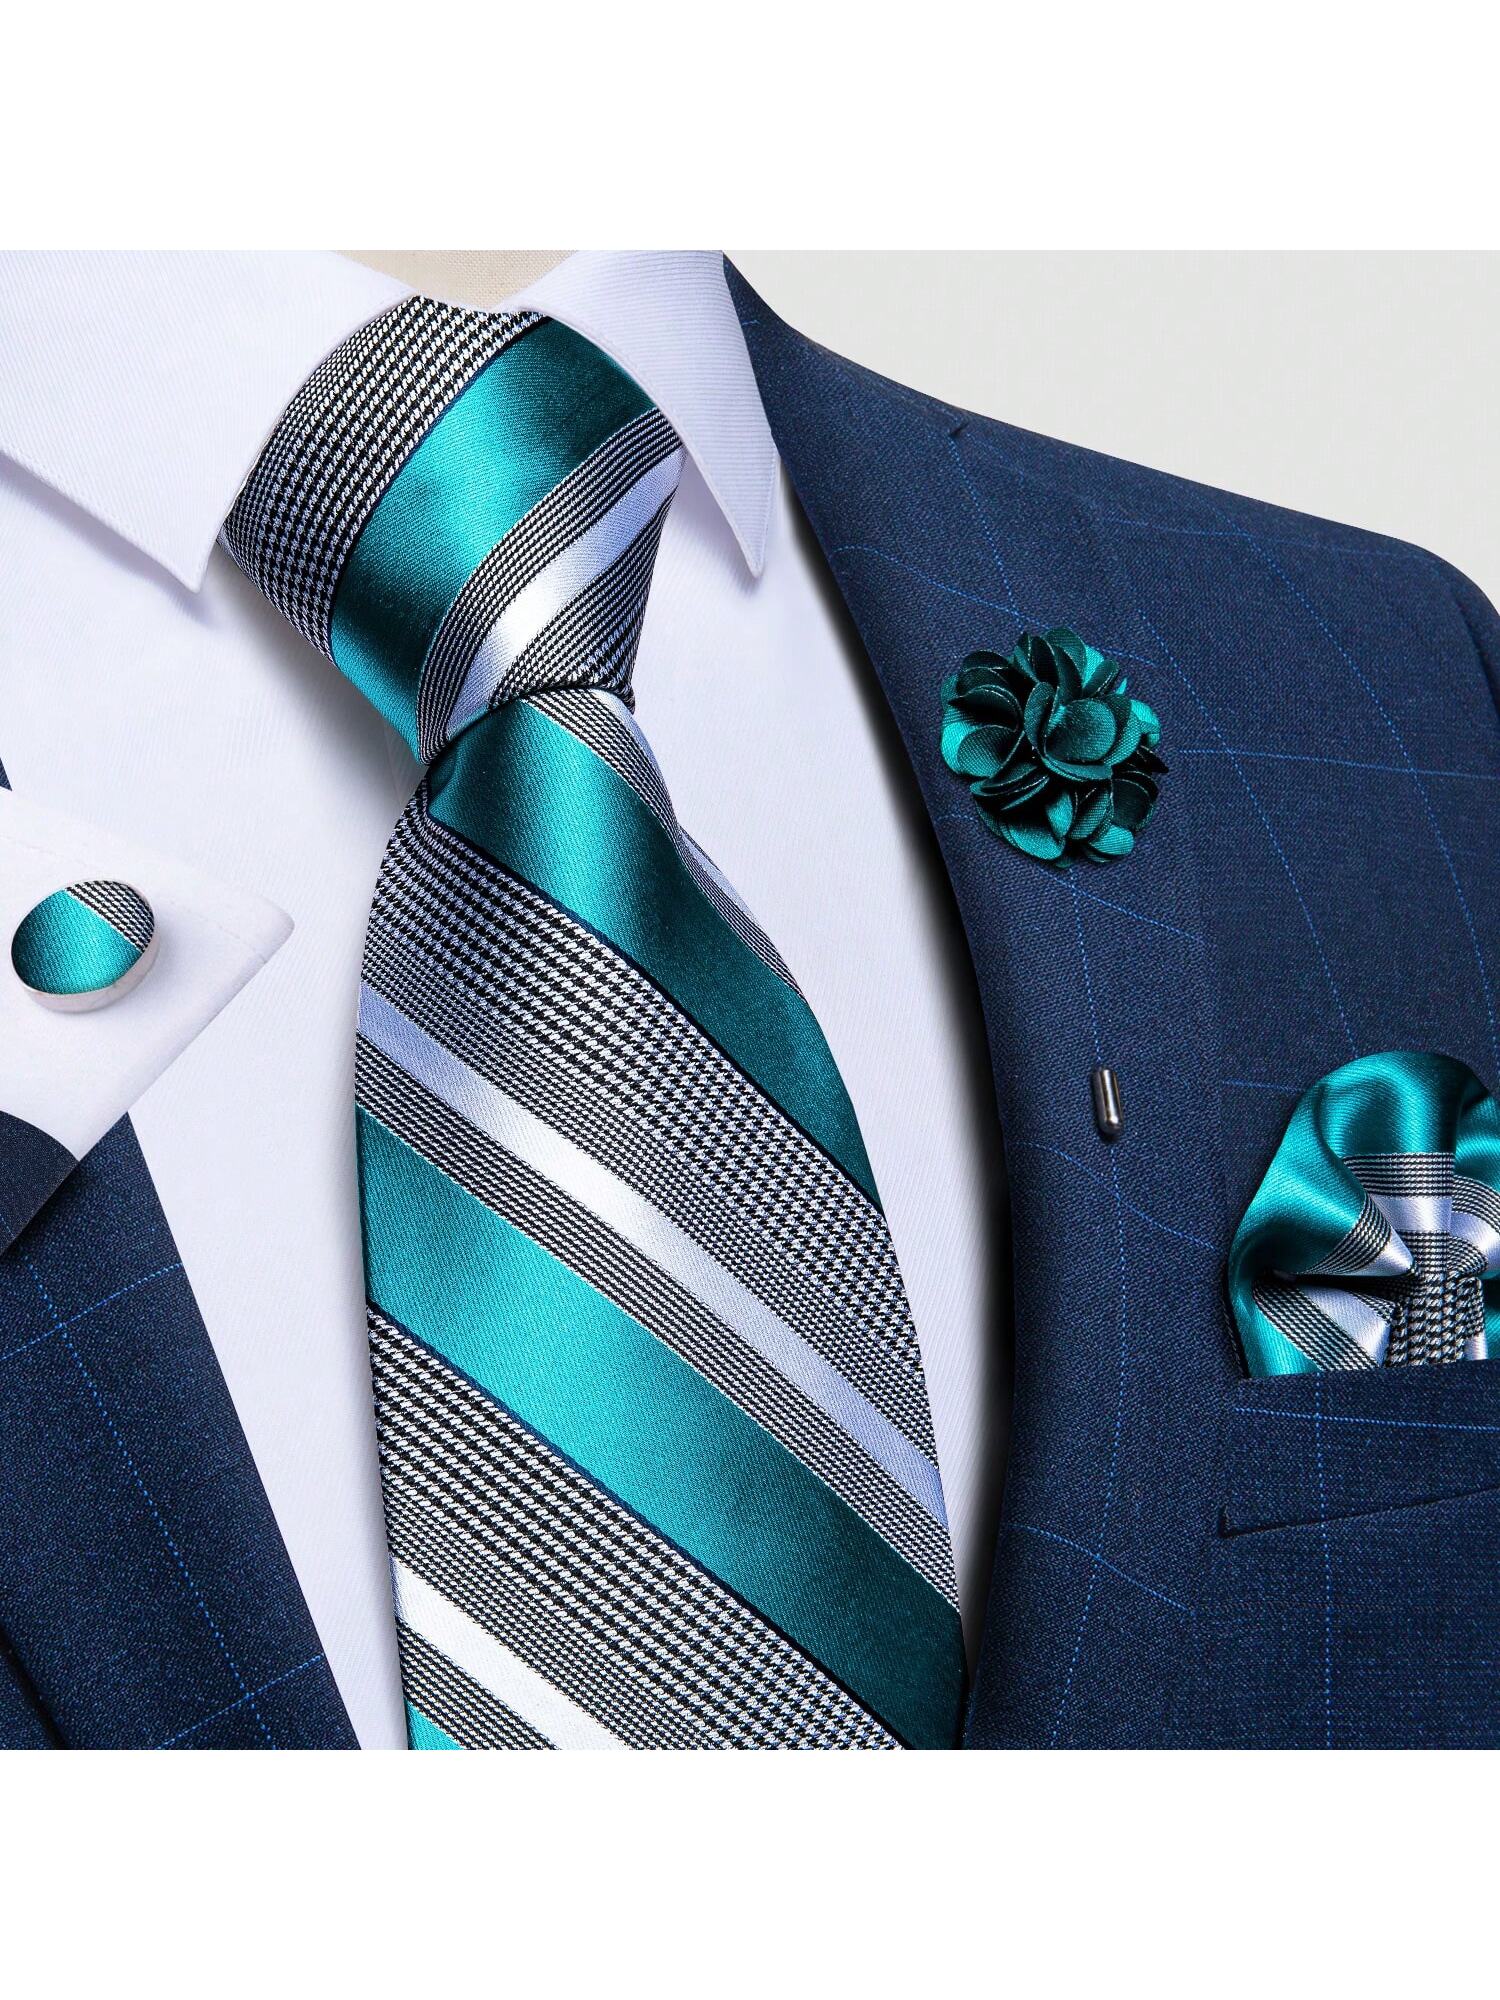 DiBanGu мужские галстуки, зеленый подарочная упаковка мужской брендовый роскошный галстук свадебный квадратный карманный мужские галстуки шелковый галстук набор запоно